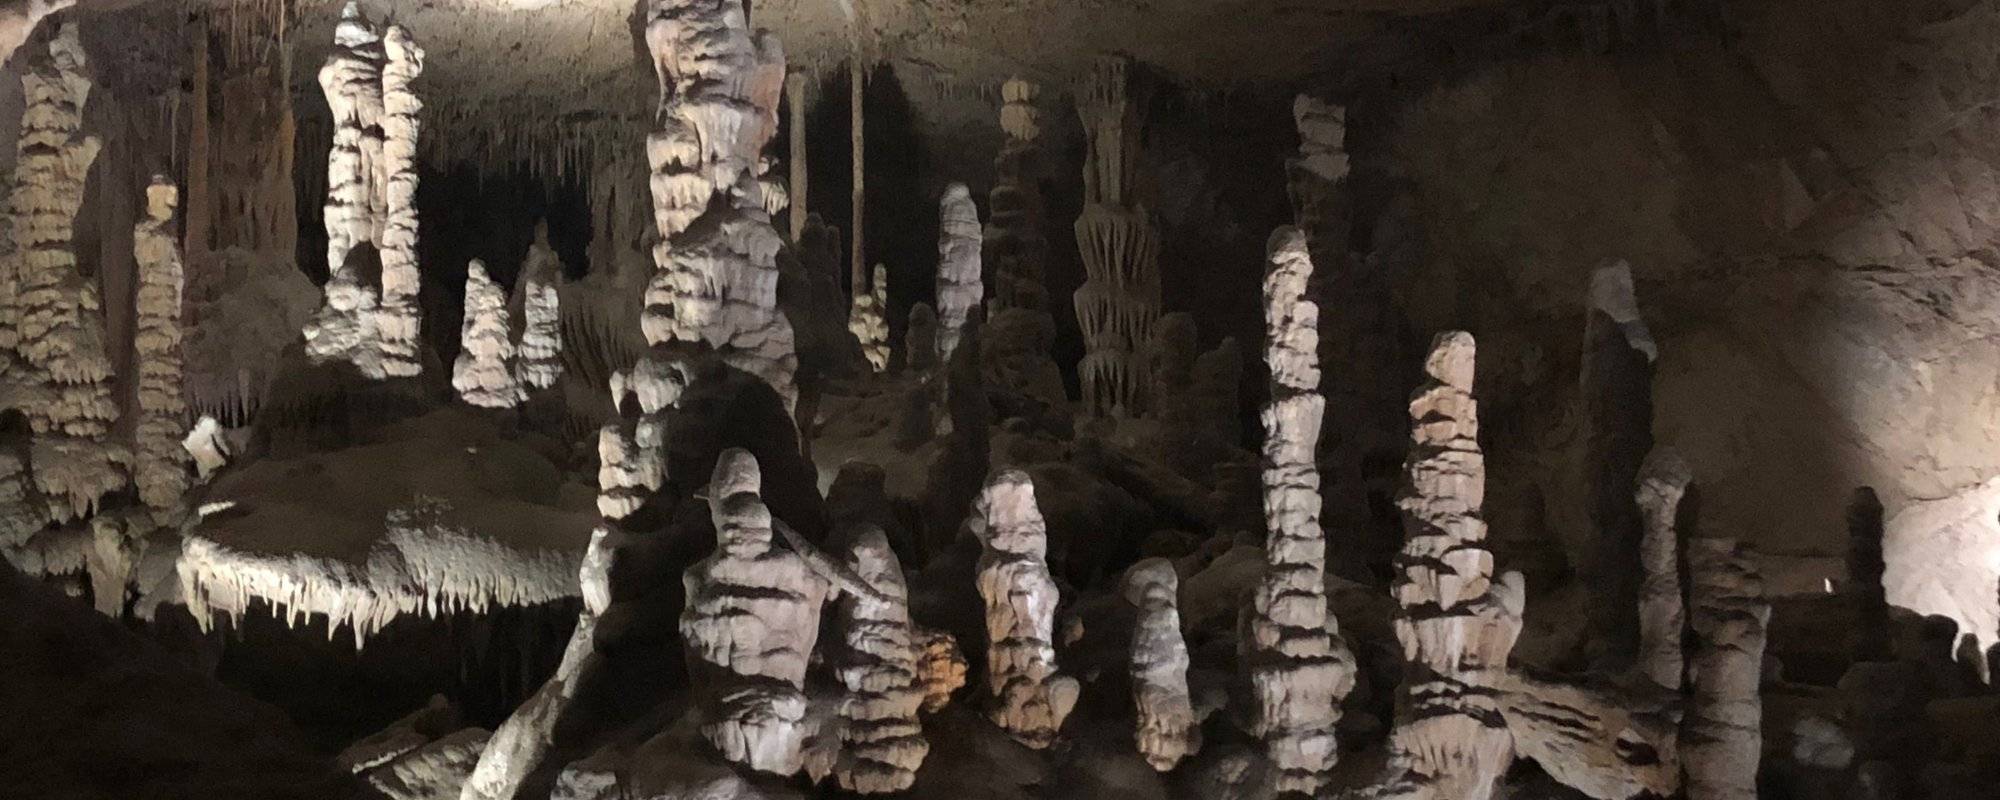 Exploring the Lewis & Clark Caverns in Montana | Photo Album